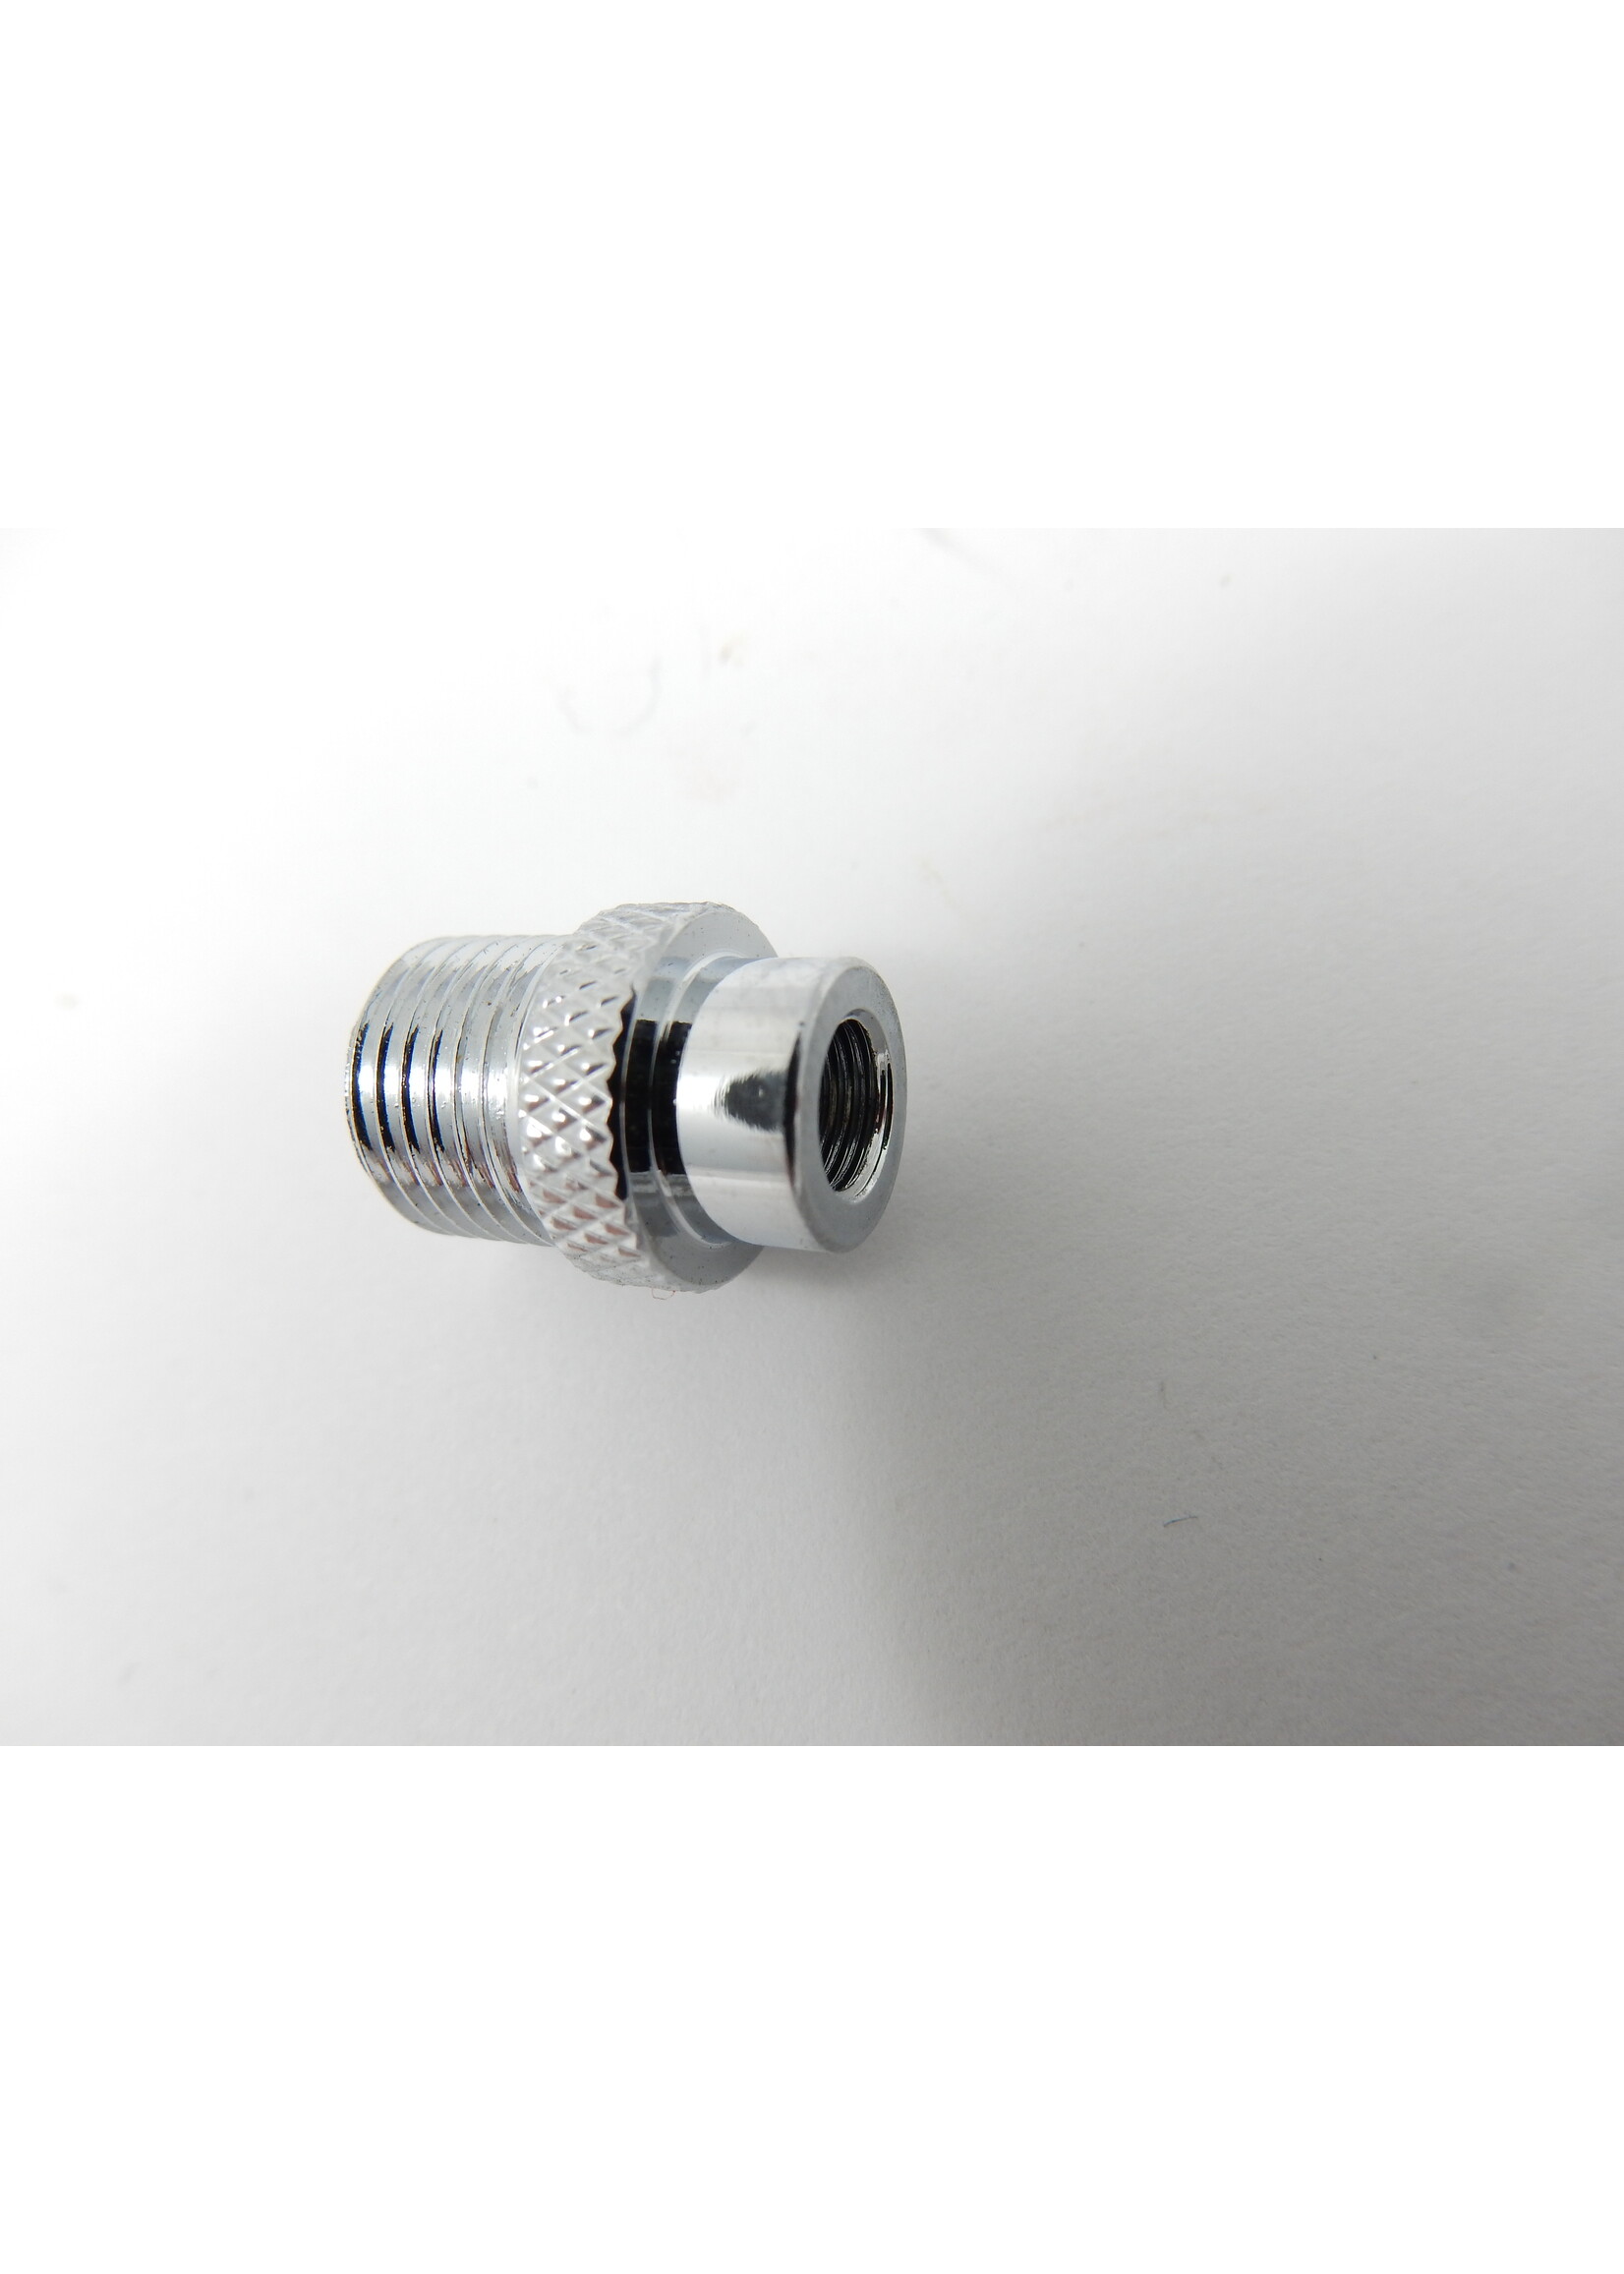 Airbrush connector : internal thread M5 - male thread G1/8